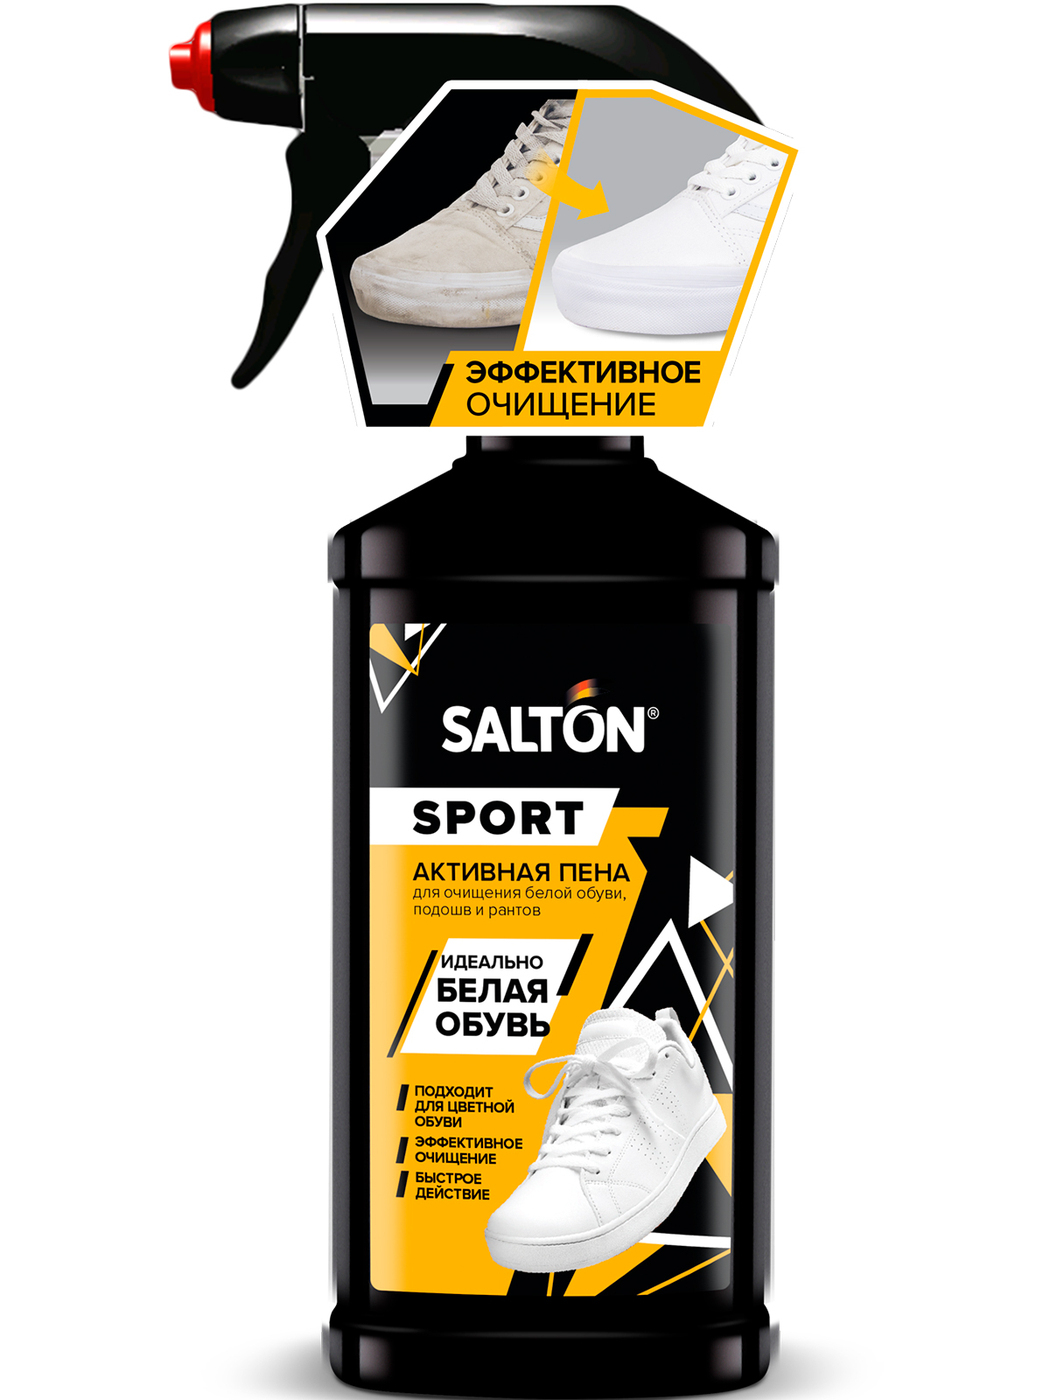 Пена-очиститель Salton Sport - Активная пена для очищения белой обуви,подошв и рантов